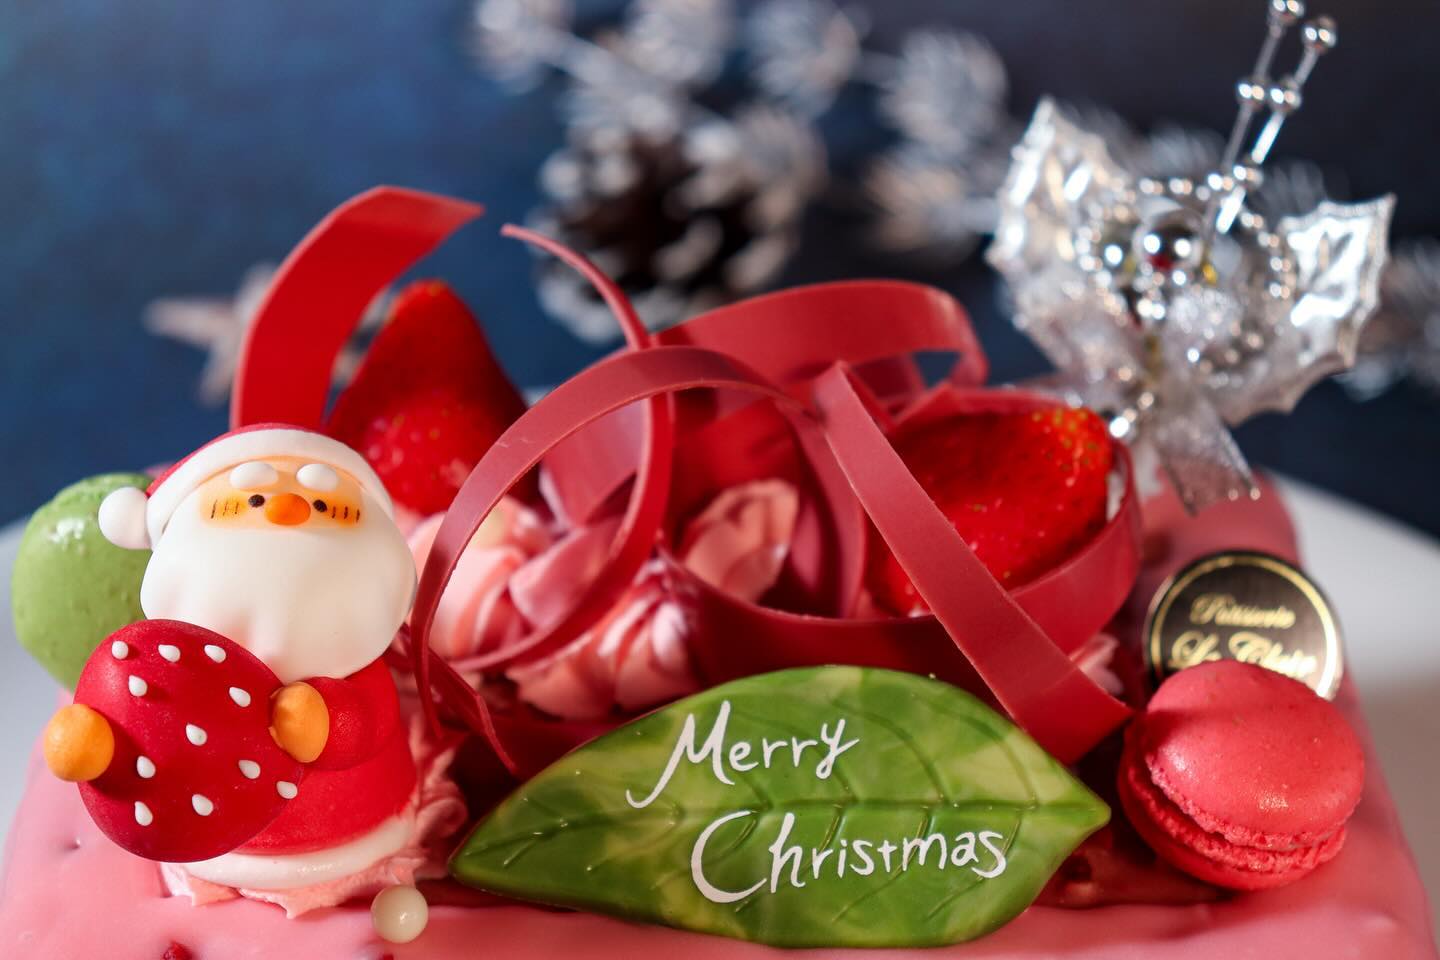 クリスマスケーキNO.7

X'masSAYA~サヤ~
5 号サイズ相当 (16.5×12cm)
¥4,000 ( 税込 ¥4,320) 
限定150台
 
人気のプティガトー SAYAを
クリスマス仕様に・・・ 
レモン香る爽やかなベリームースを 
お楽しみください。